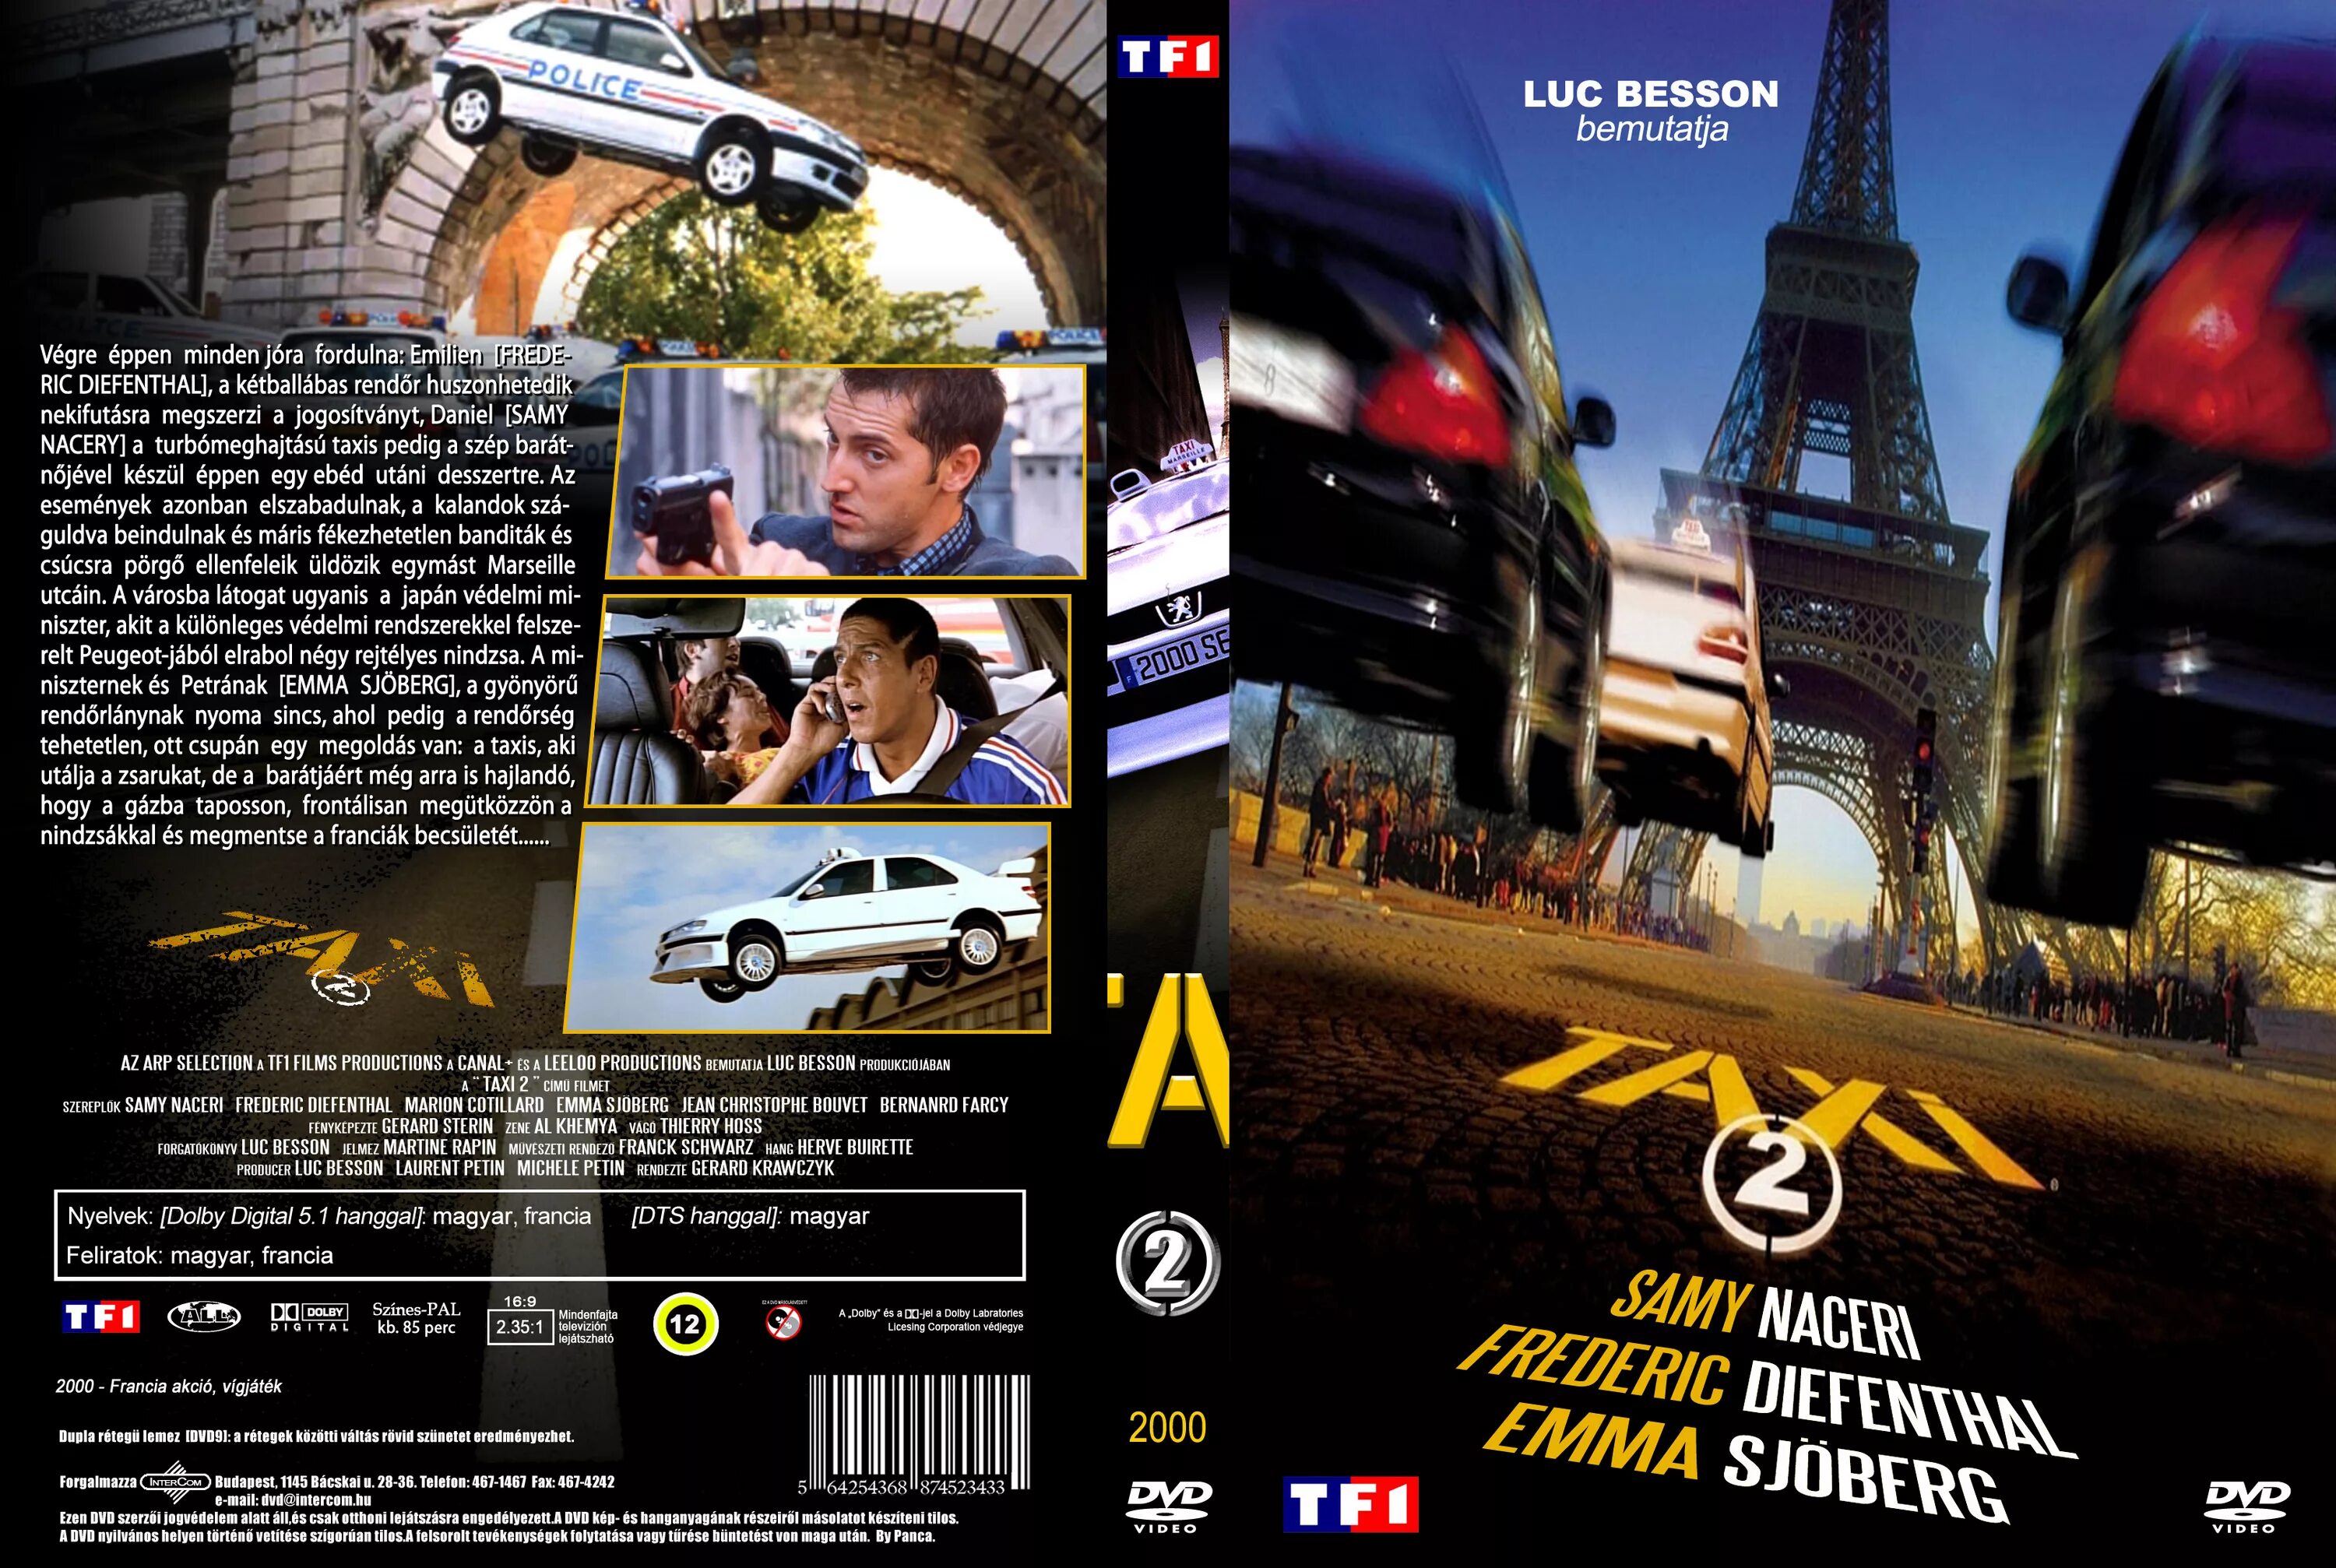 Такси 2 DVD. Такси 2 / Taxi 2 DVD. Такси 2 пс1.